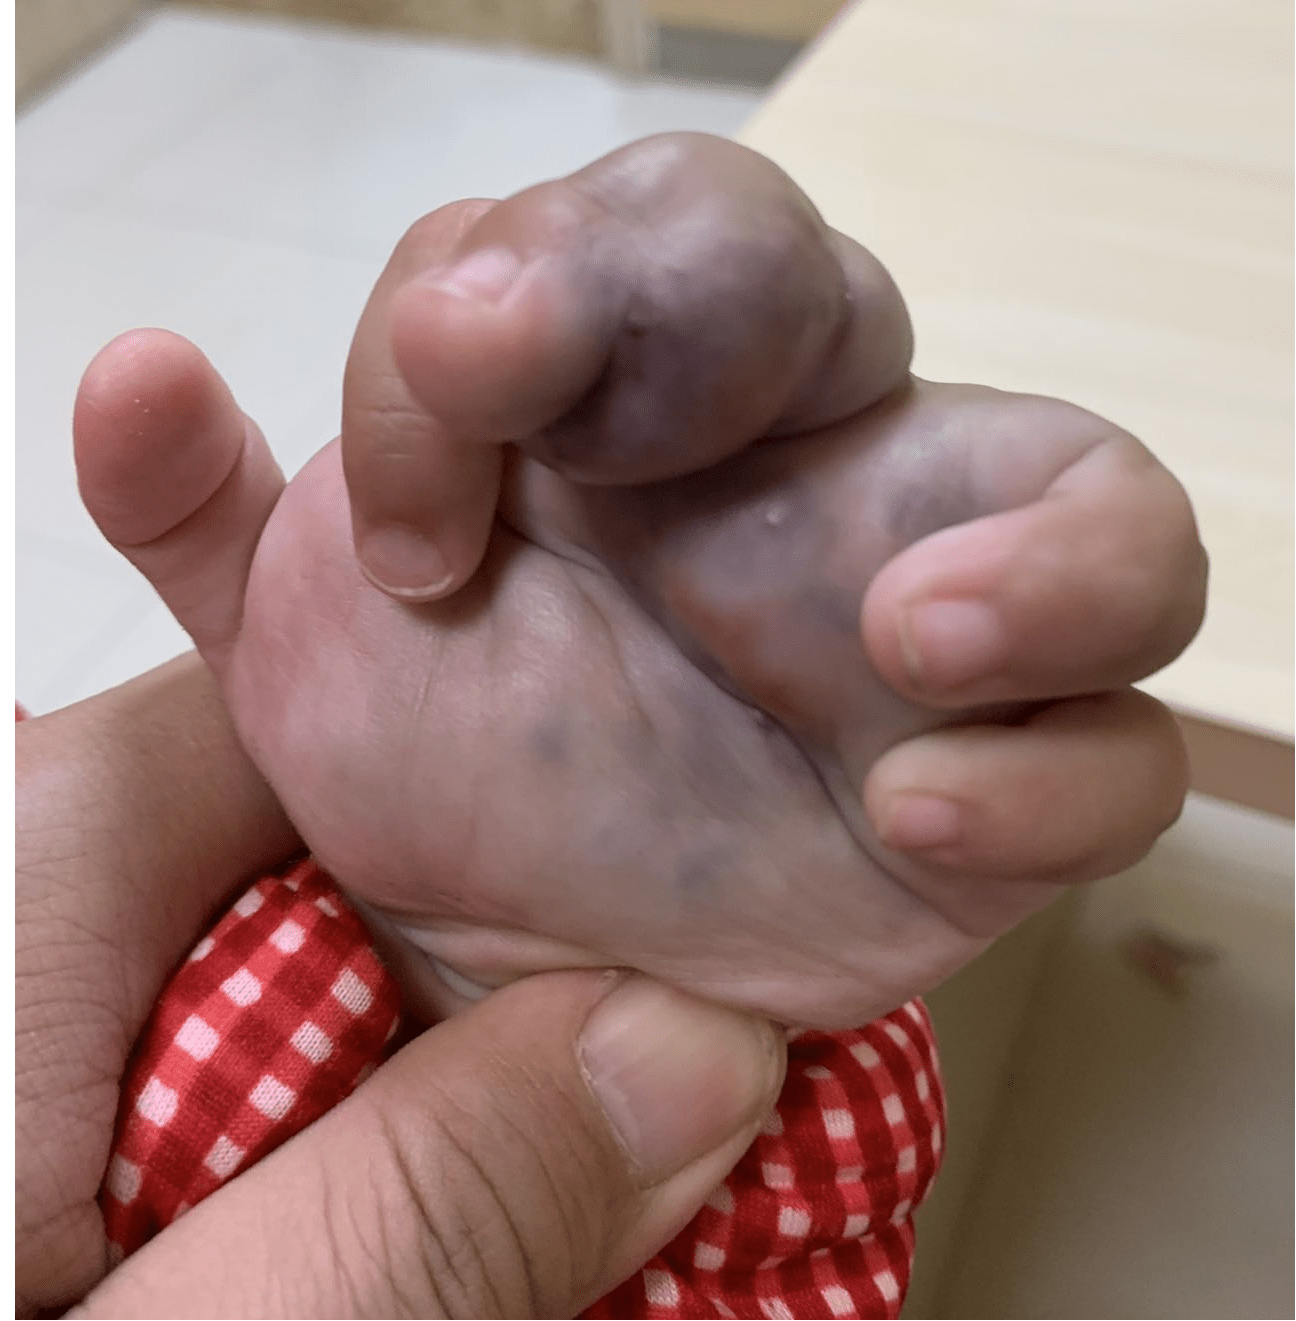 徐州市儿童医院科普:儿童巨大静脉畸形介入硬化治疗经验分享